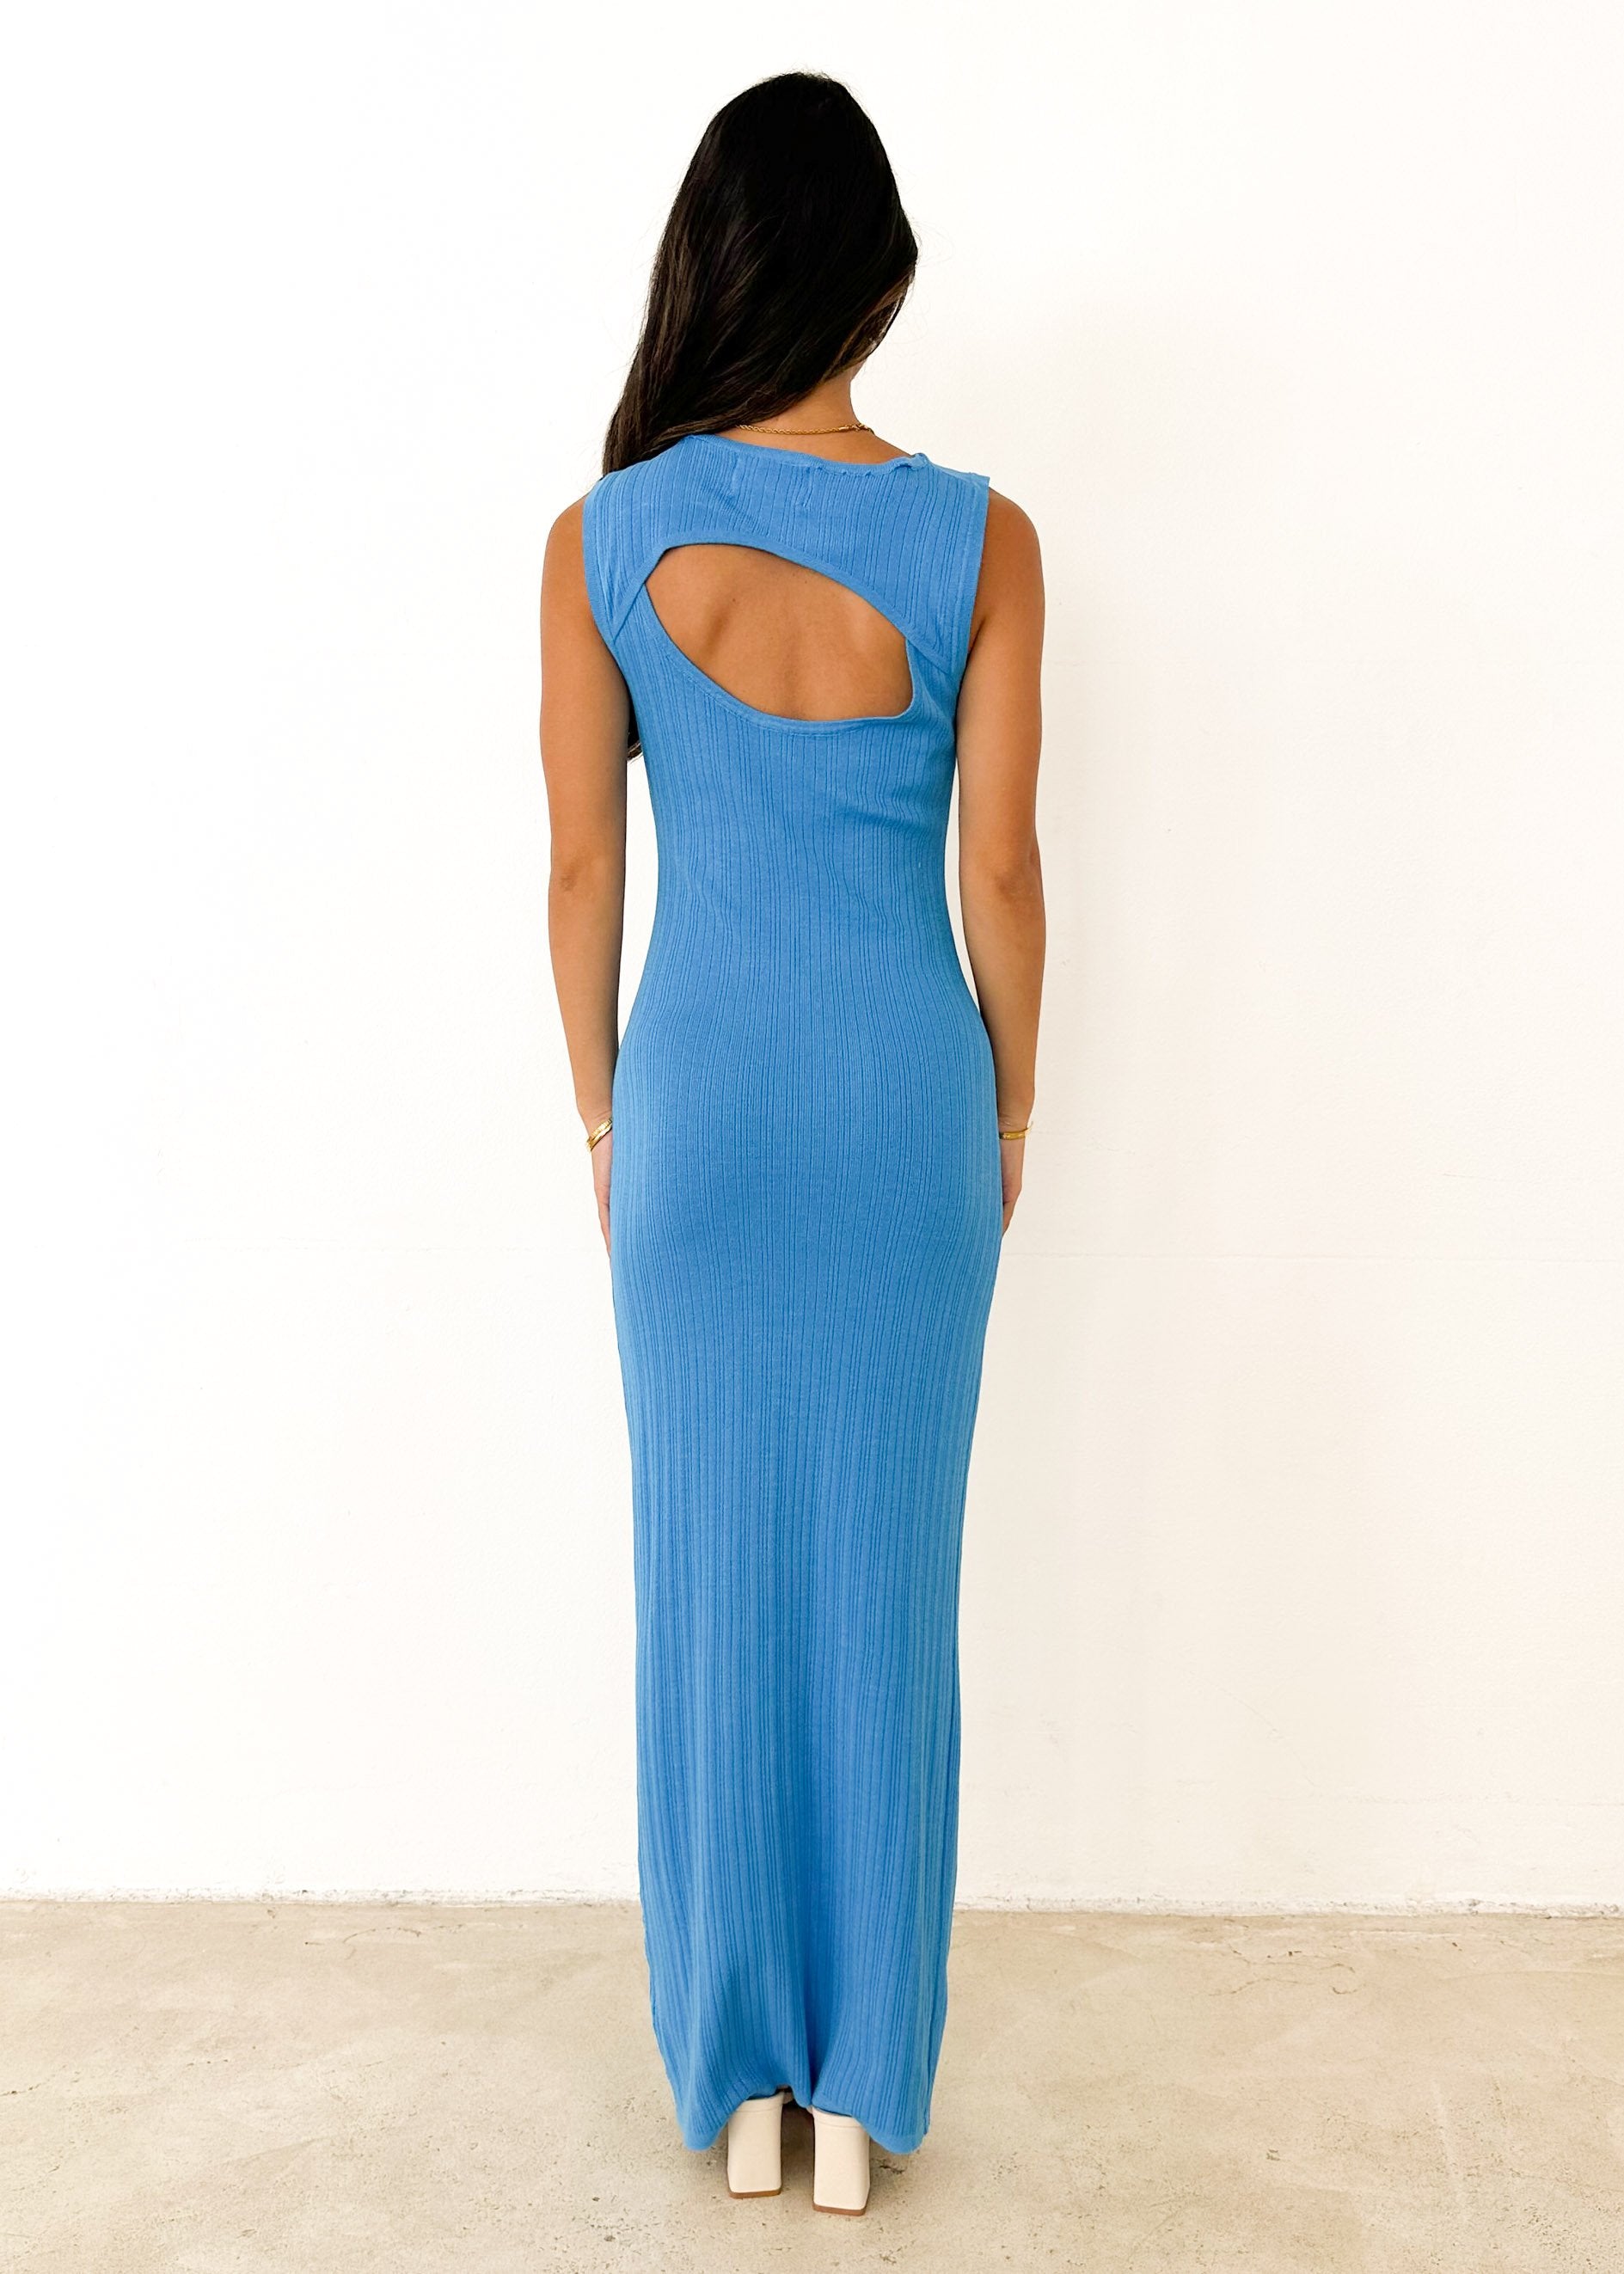 Krista Knit Maxi Dress - Blue